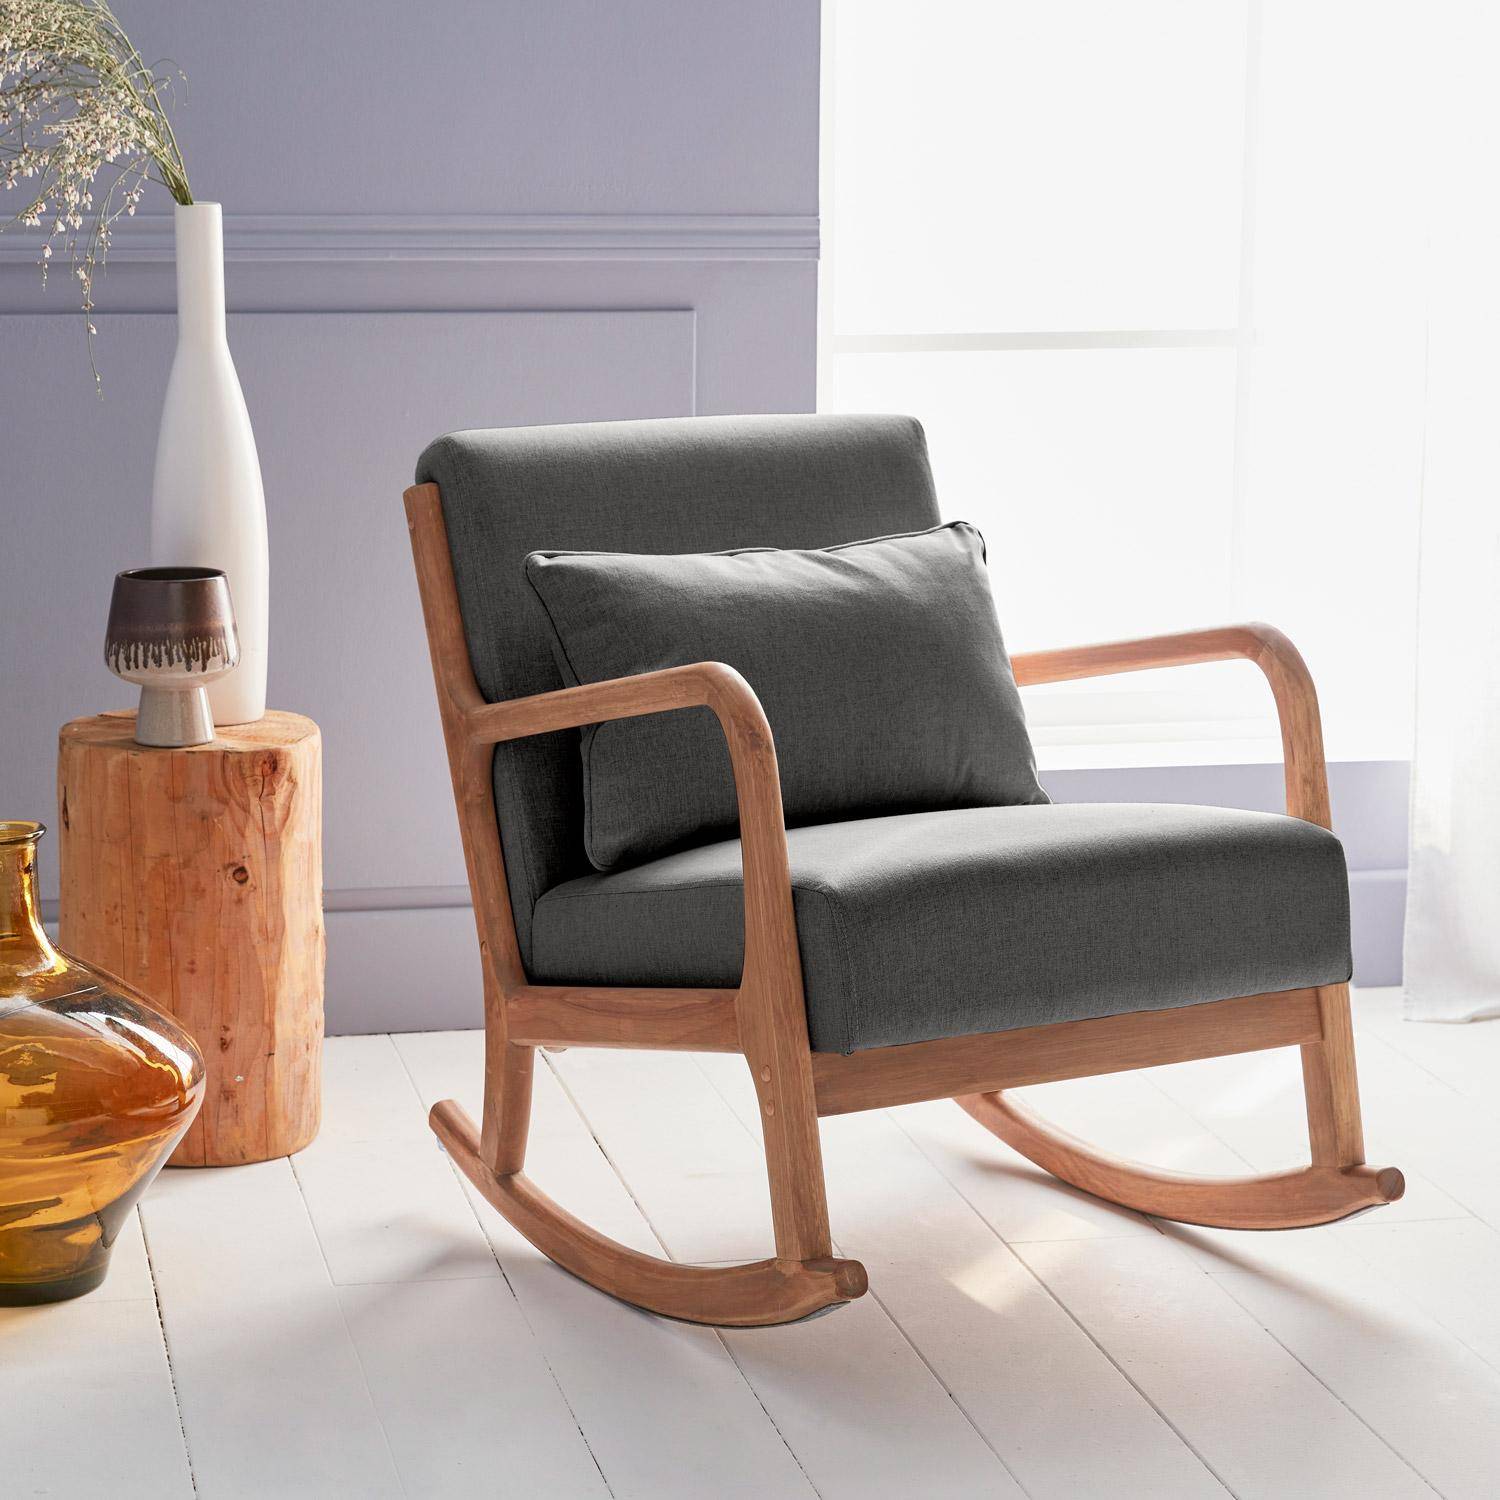 Fauteuil à bascule design en bois et tissu, 1 place, rocking chair scandinave, gris foncé Photo1